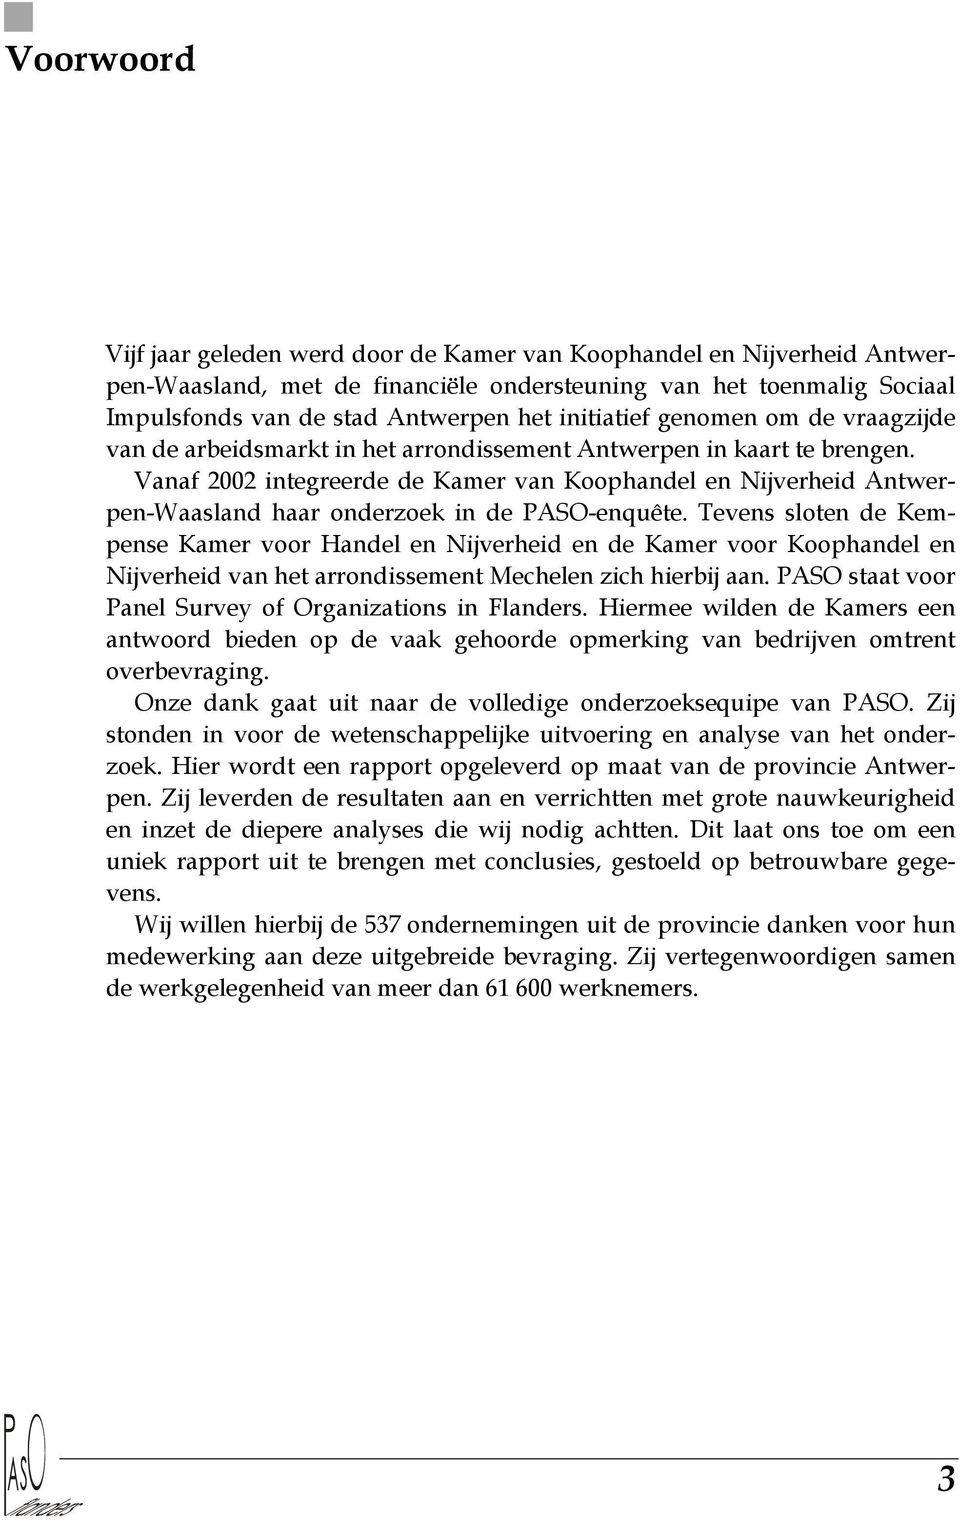 Vanaf 2002 integreerde de Kamer van Koophandel en Nijverheid Antwerpen-Waasland haar onderzoek in de PASO-enquête.